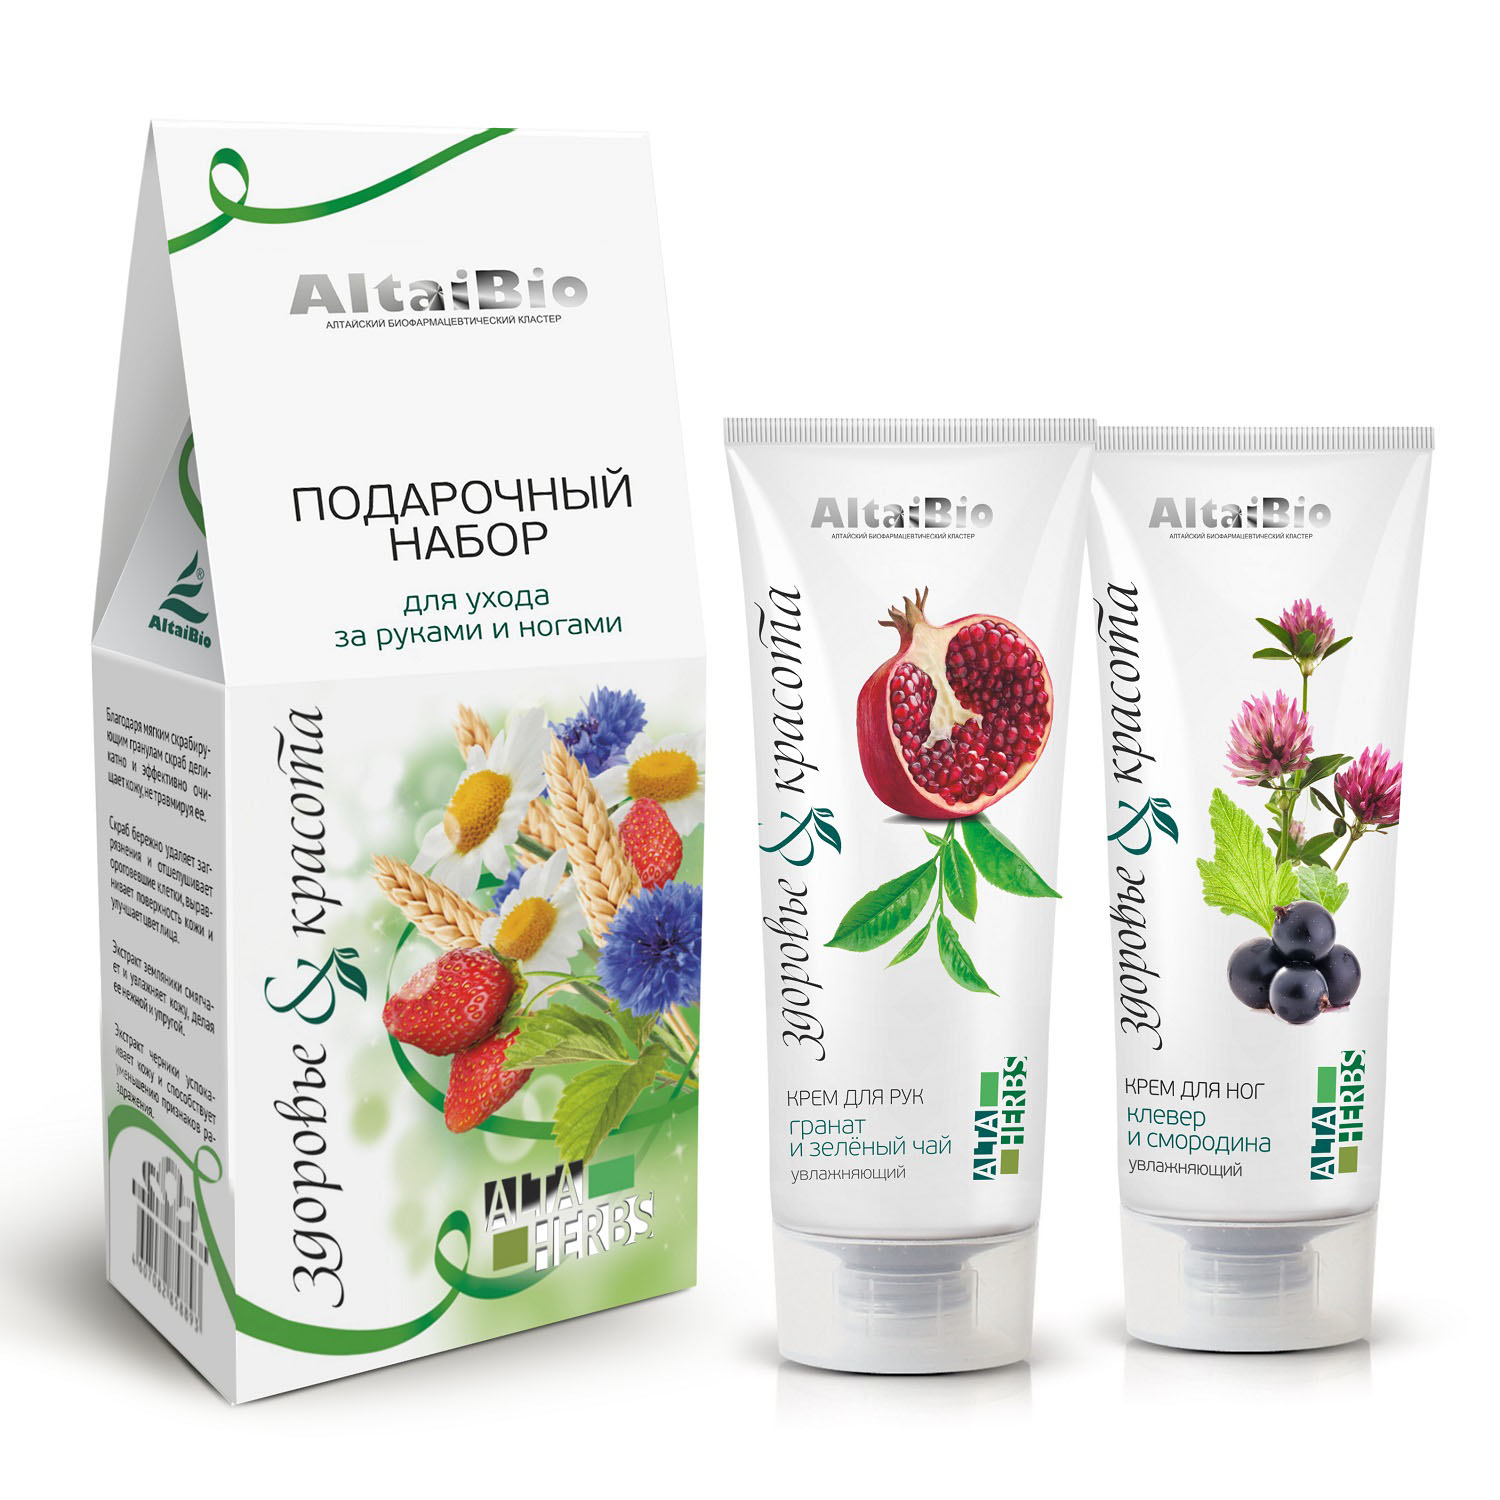 цена AltaiBio Подарочный набор для ухода за руками и ногами Здоровье и красота (AltaiBio, AltaHerbs)